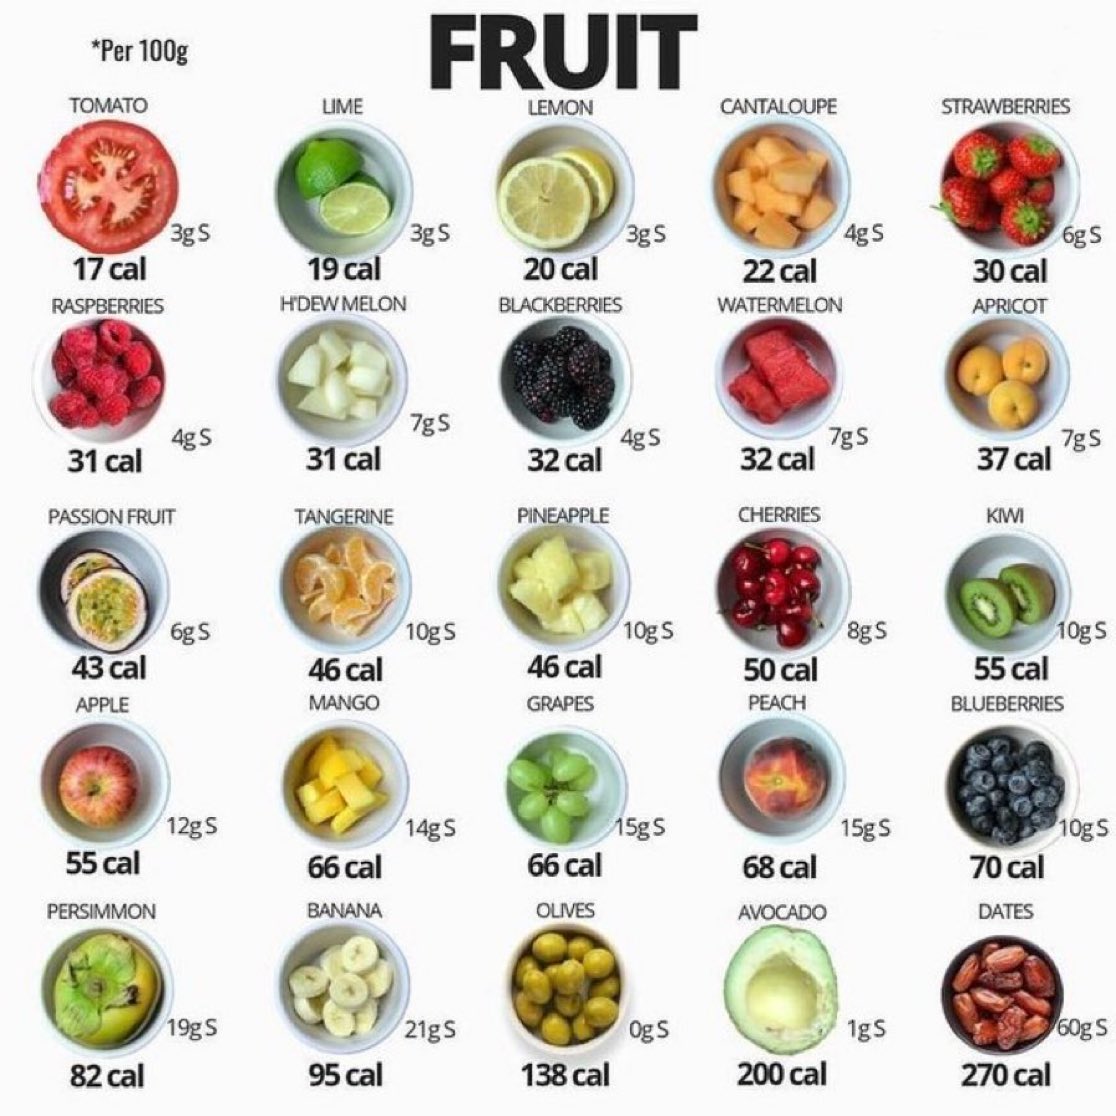 FRUIT CALORIES